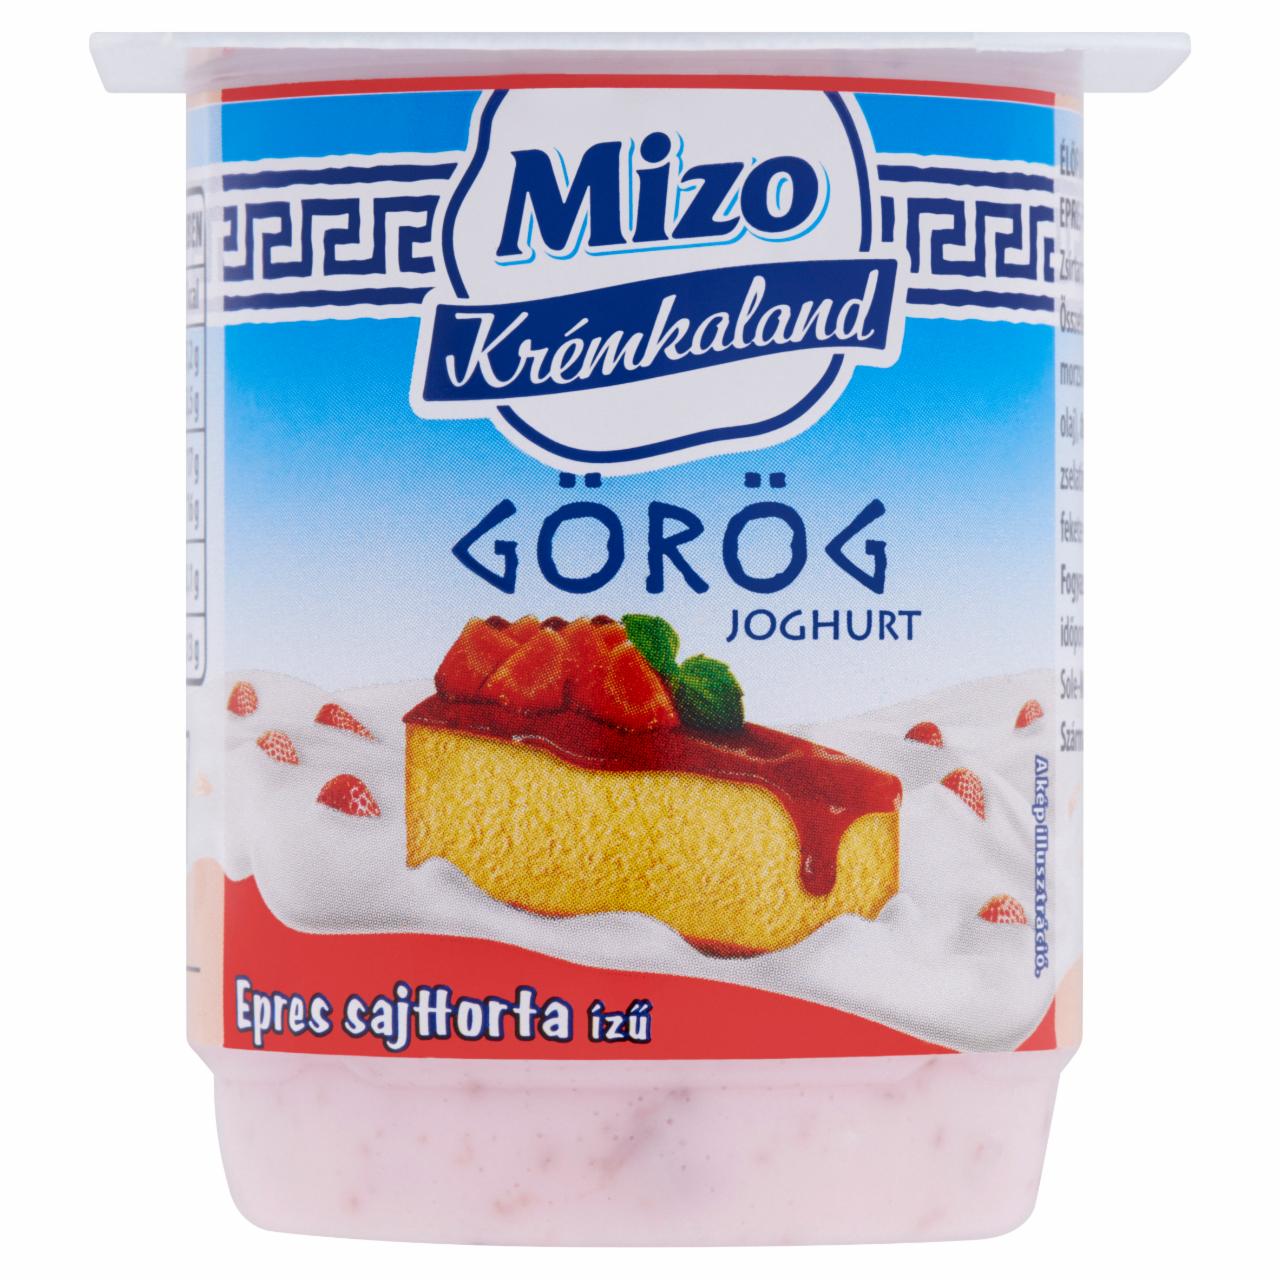 Képek - Mizo Krémkaland élőflórás epres sajttorta ízű epres-piskótás görög joghurt 125 g